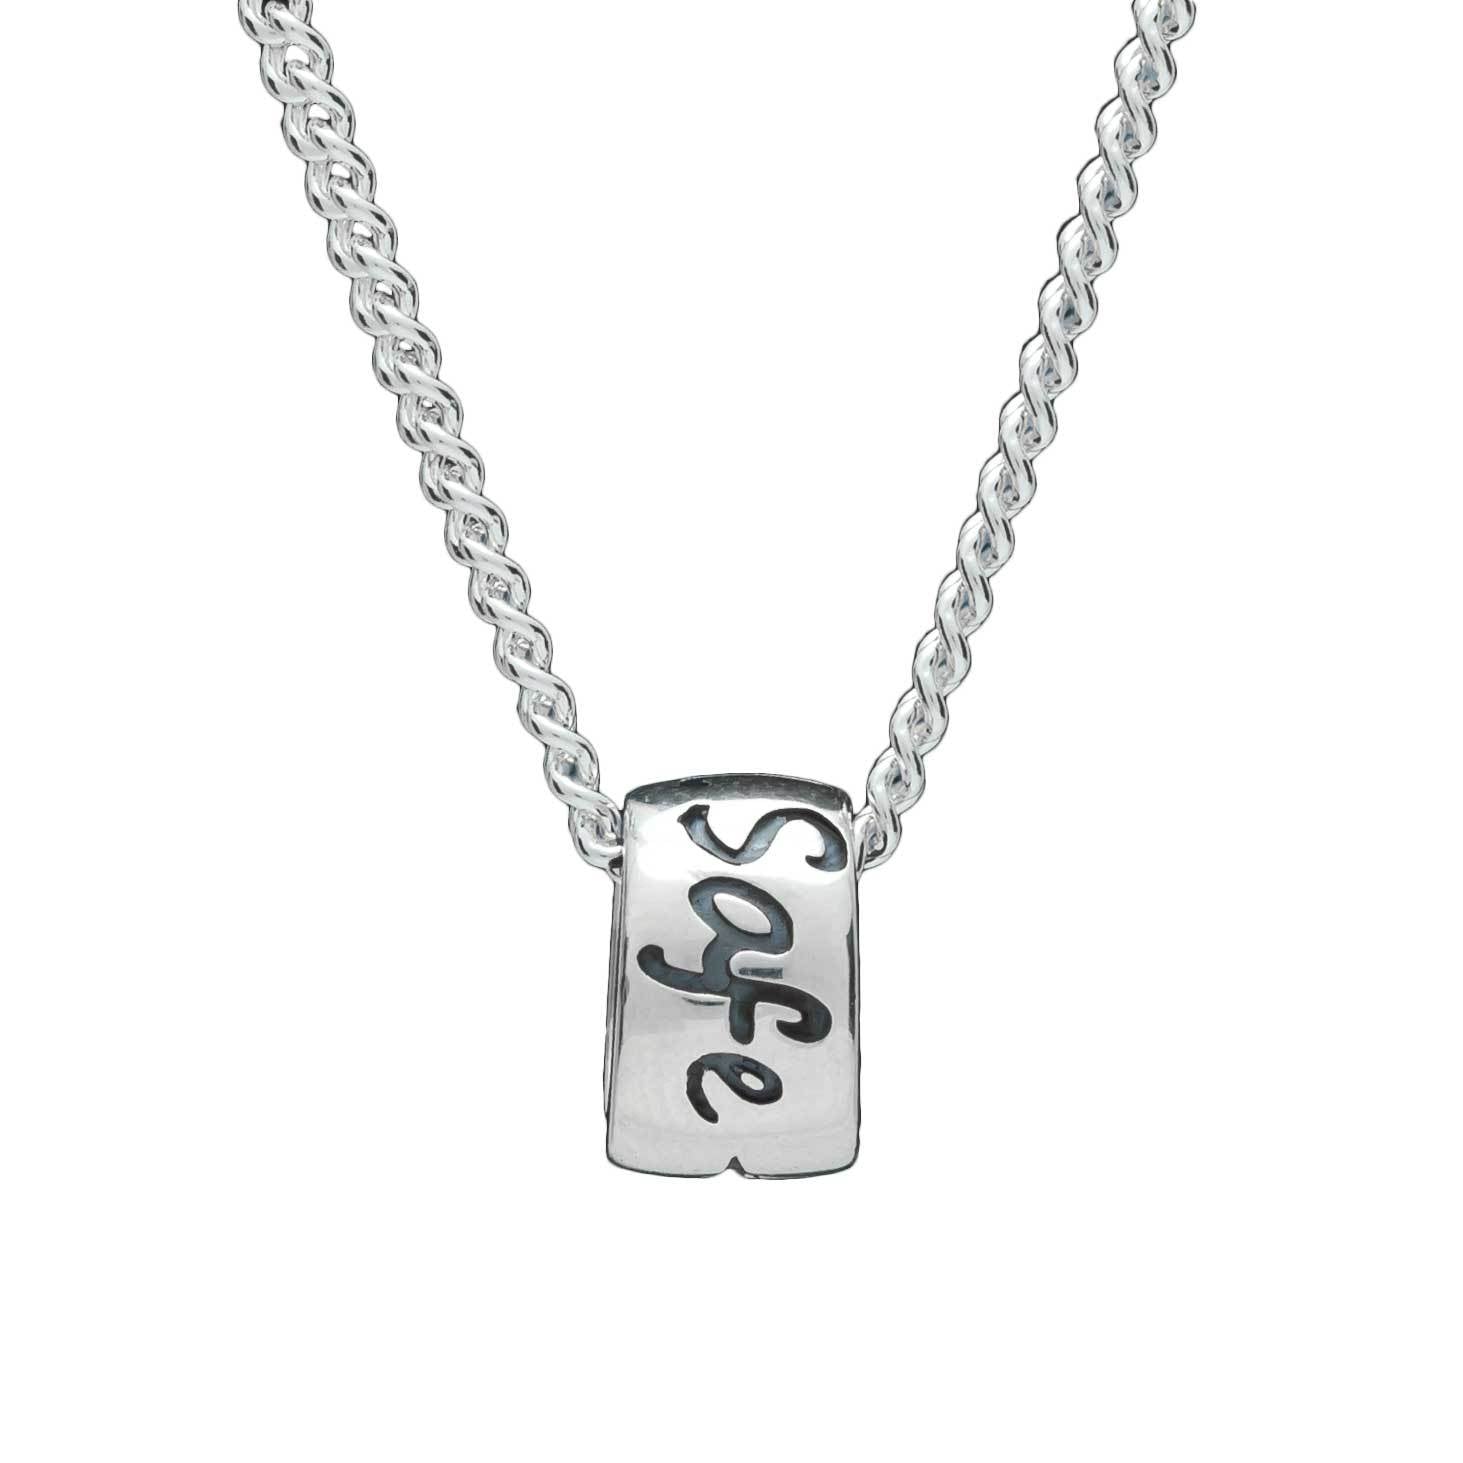 Travel Safe Silver Necklace - alternative St Christopher Pendant for men & women handmade in the UK